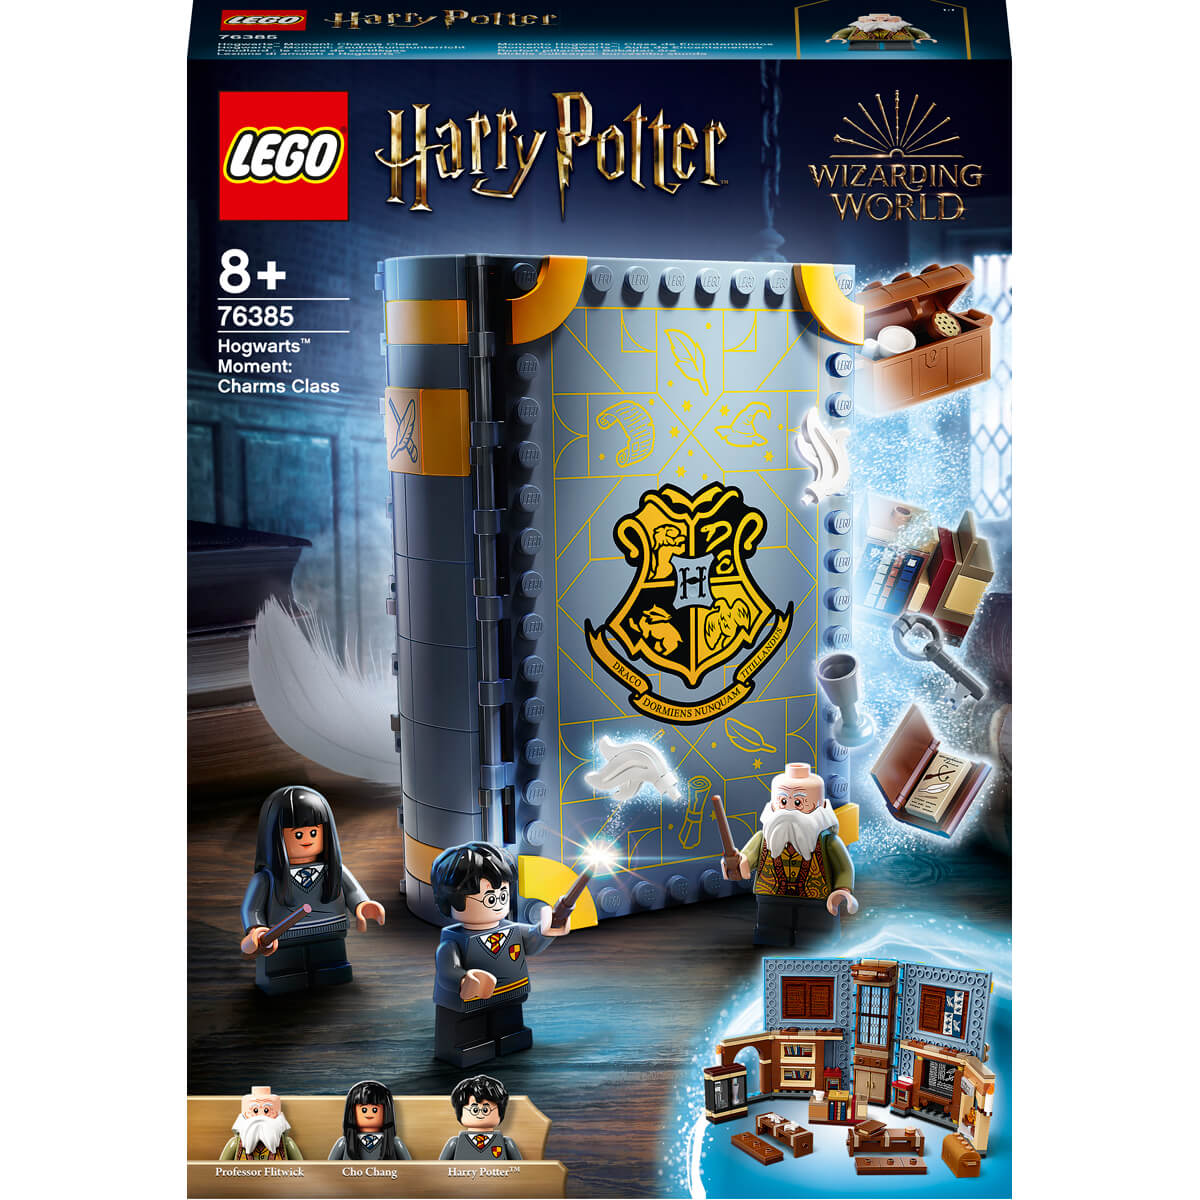 ΠΑΙΔΙ | Παιχνίδια | LEGO | HARRY POTER TM 76385 Hogwarts™ Moment: Charms Class